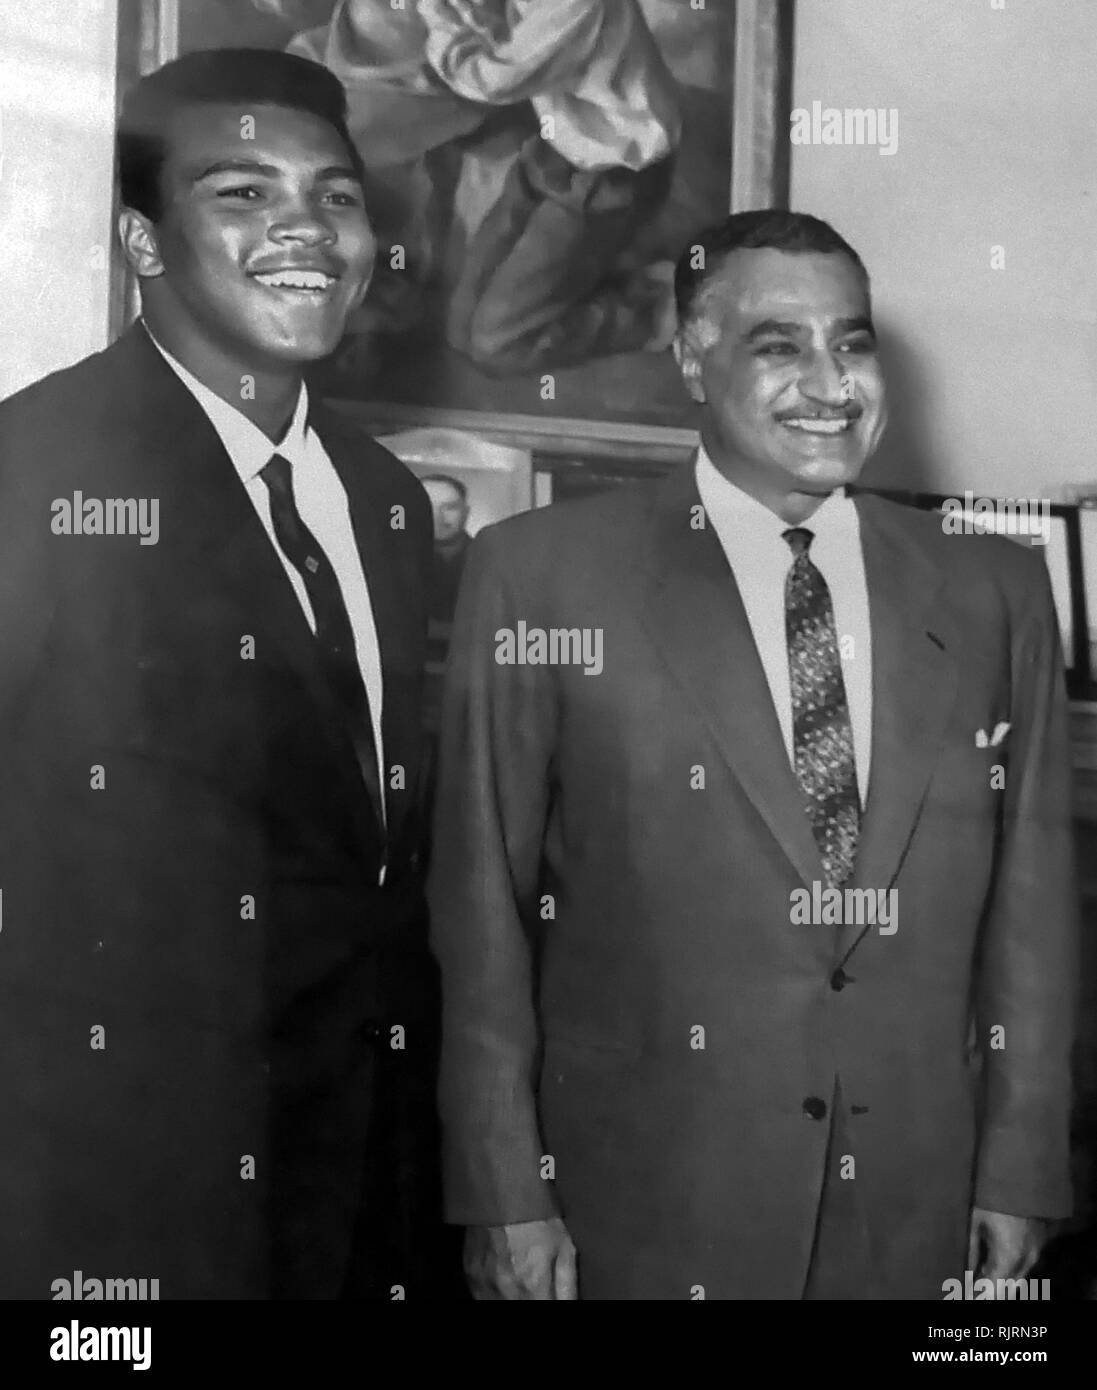 Muhammad Ali incontra il Presidente Gamal Abdul Nasser di Egitto, 1964. Muhammad Ali,(1942 - 2016). Ali è stato un American boxer professionale e attivista; Egli è ampiamente considerato come uno dei più significativi e celebrato personaggi dello sport del XX secolo. Foto Stock